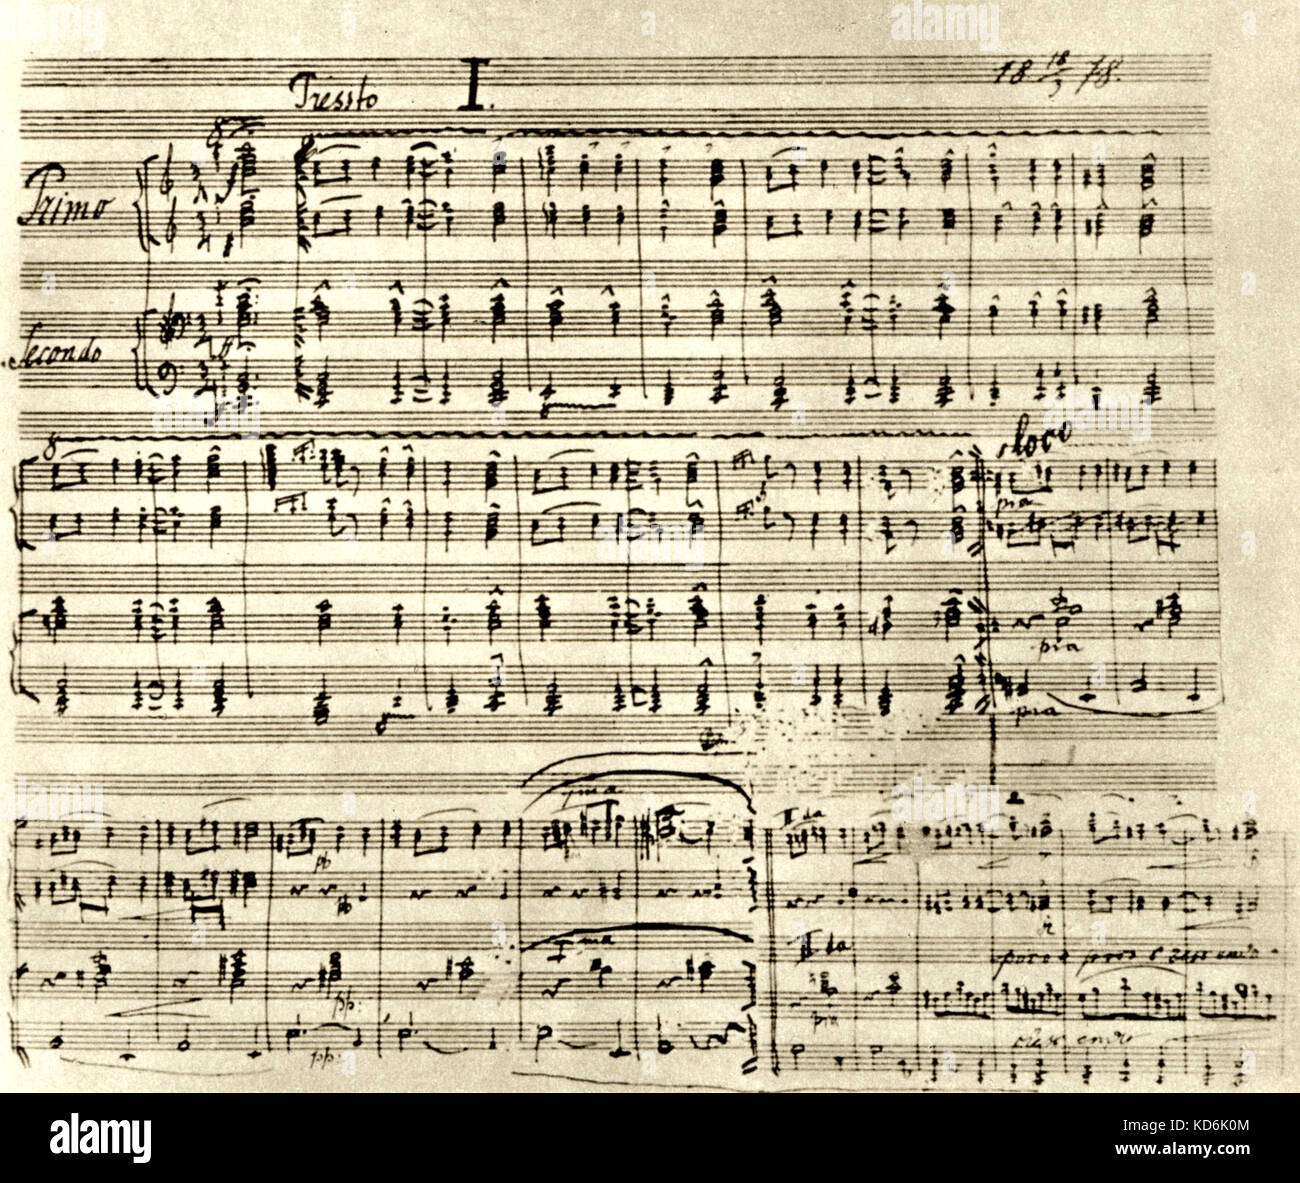 Eröffnung von Tschaikowski's lavonic Tanz' Nr. 1, op.46, mit der Handschrift des Komponisten, 1876. Score page signiert und datiert. Tschechische Komponist, 1841-1904. Stockfoto